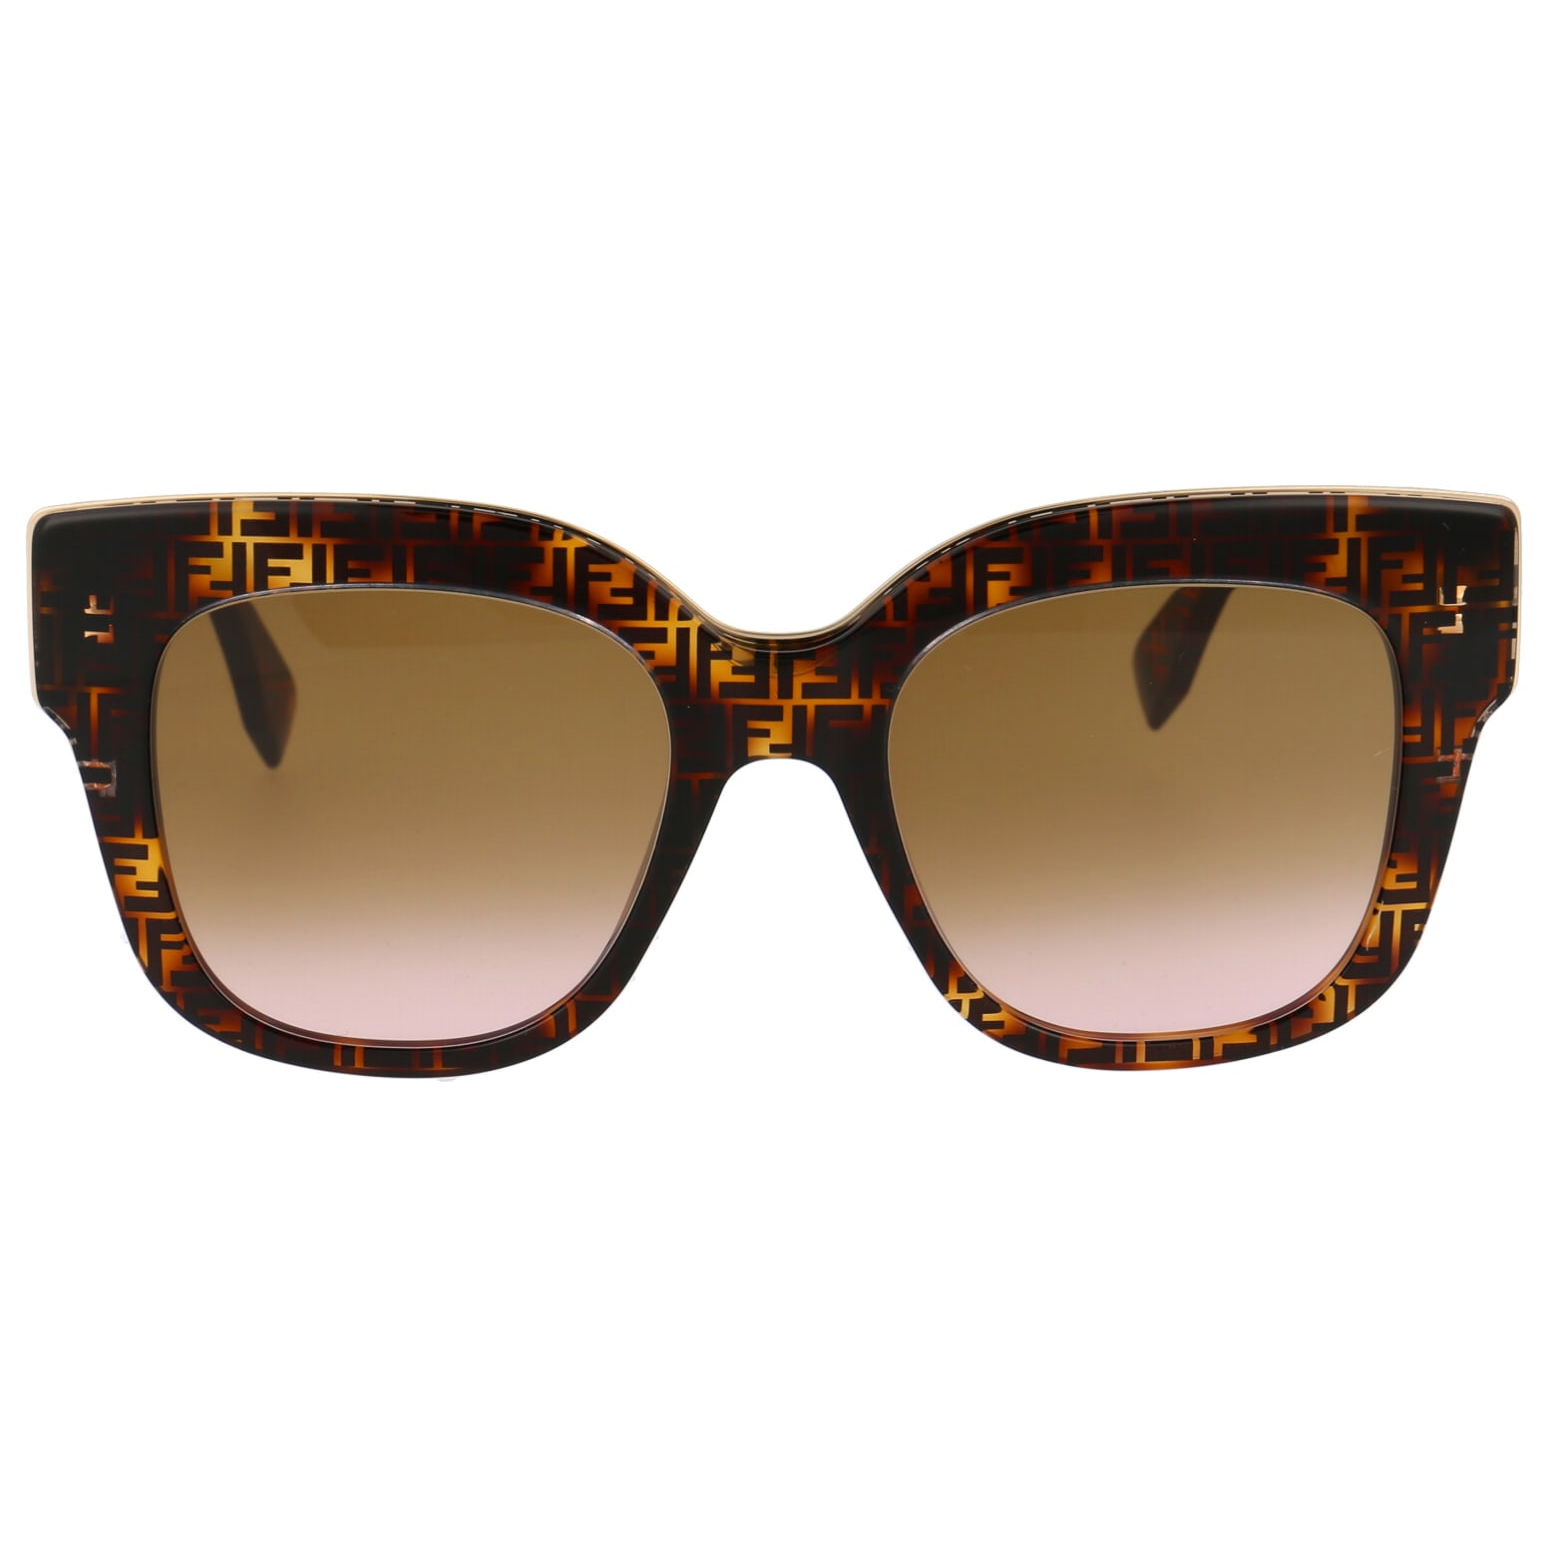 Fendi FF0359/G/S Sunglasses - Purevision - The Sunglasses Shop in Queens